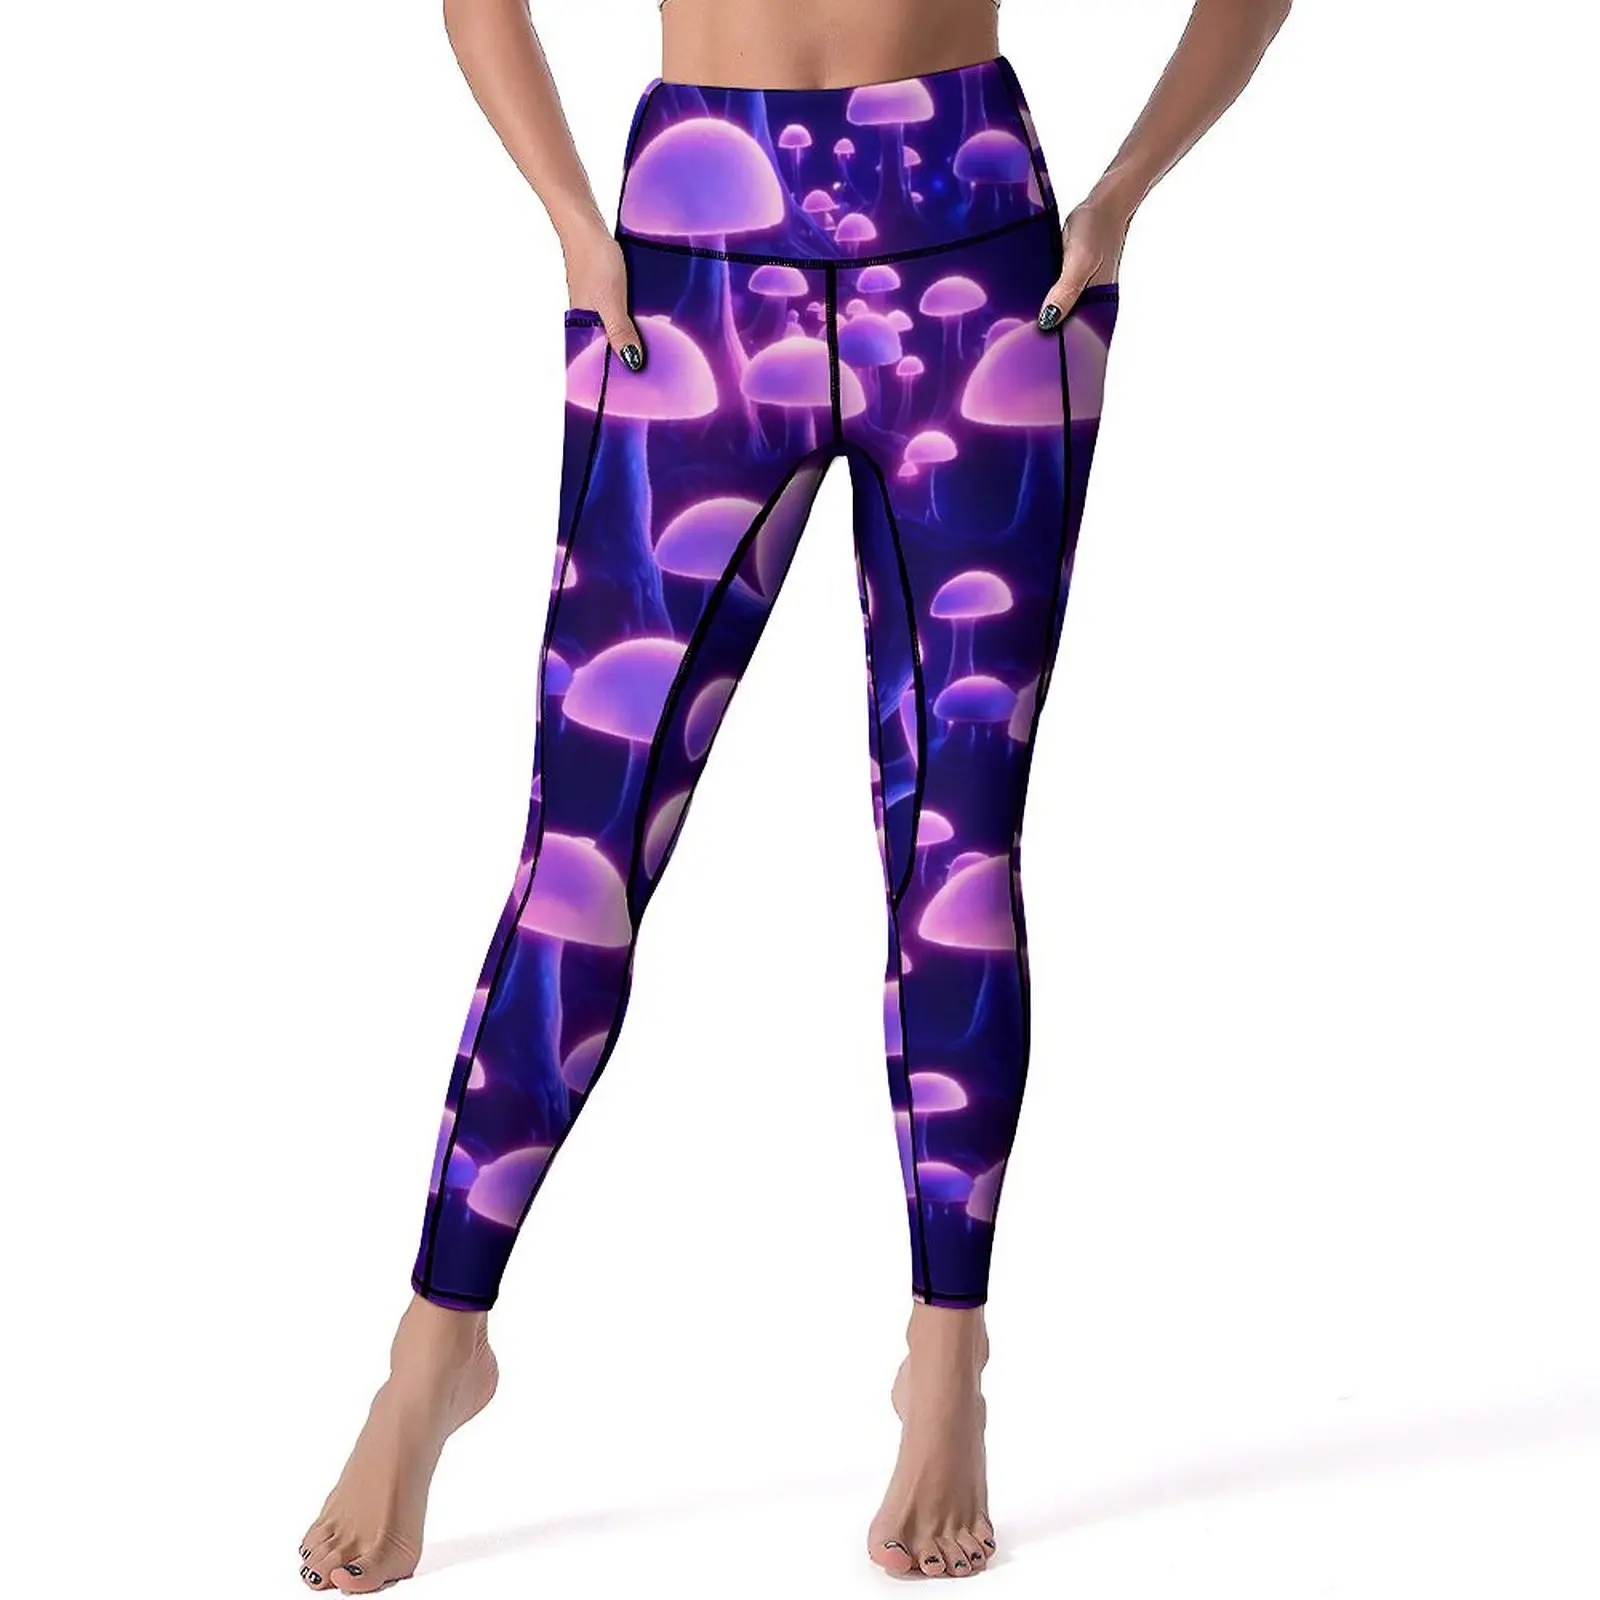 

Фиолетовые Волшебные леггинсы в виде грибов, сексуальные психоделические штаны для йоги с высокой талией, дышащие леггинсы, женские спортивные трико для занятий спортом